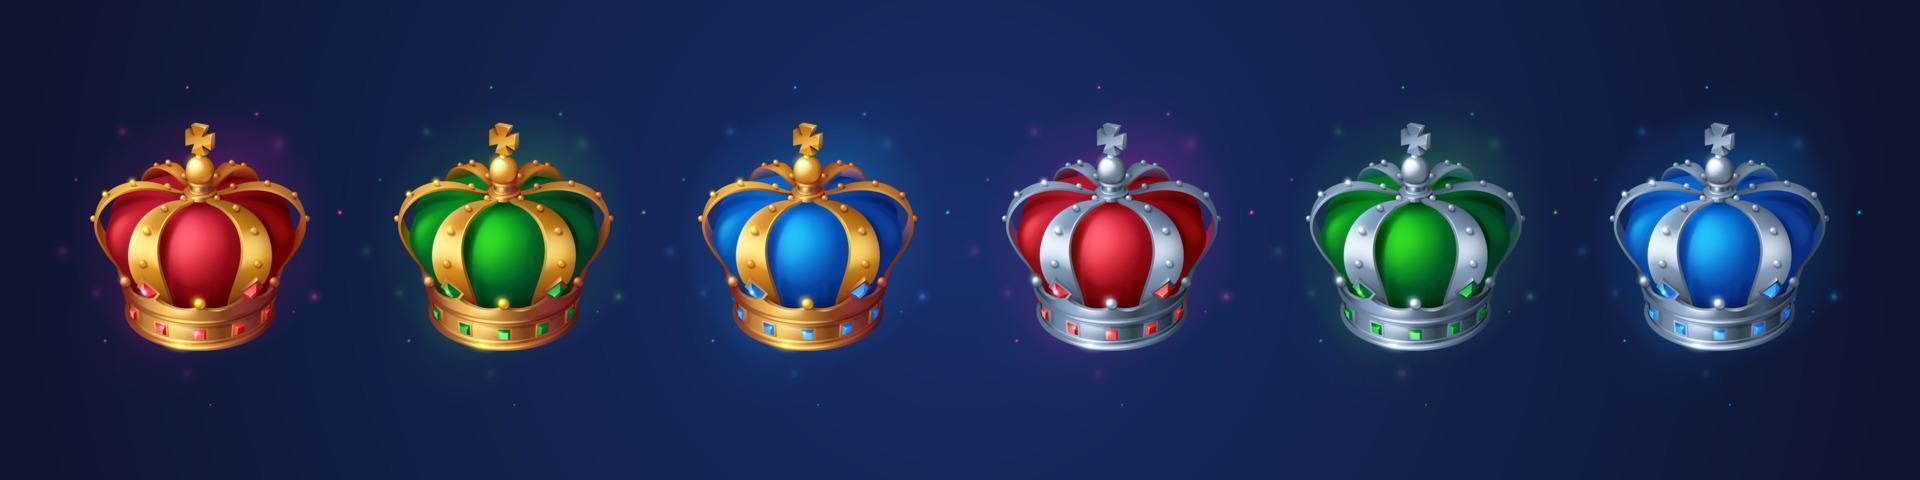 conjunto de coronas doradas para los activos del juego king o queen vector